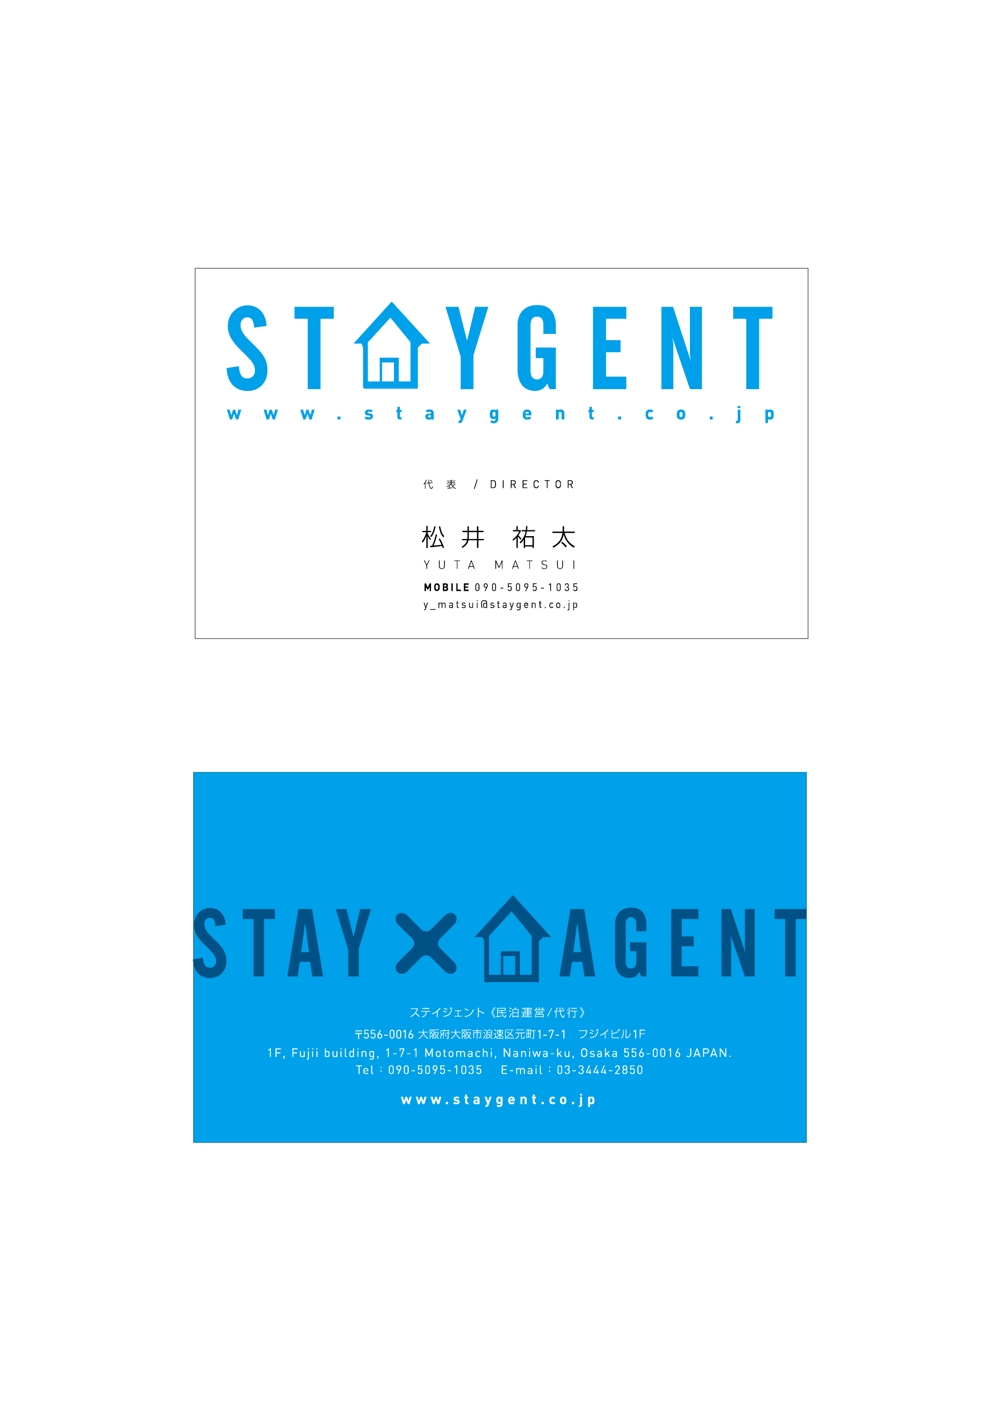 民泊運営会社「Staygent」の名刺デザイン